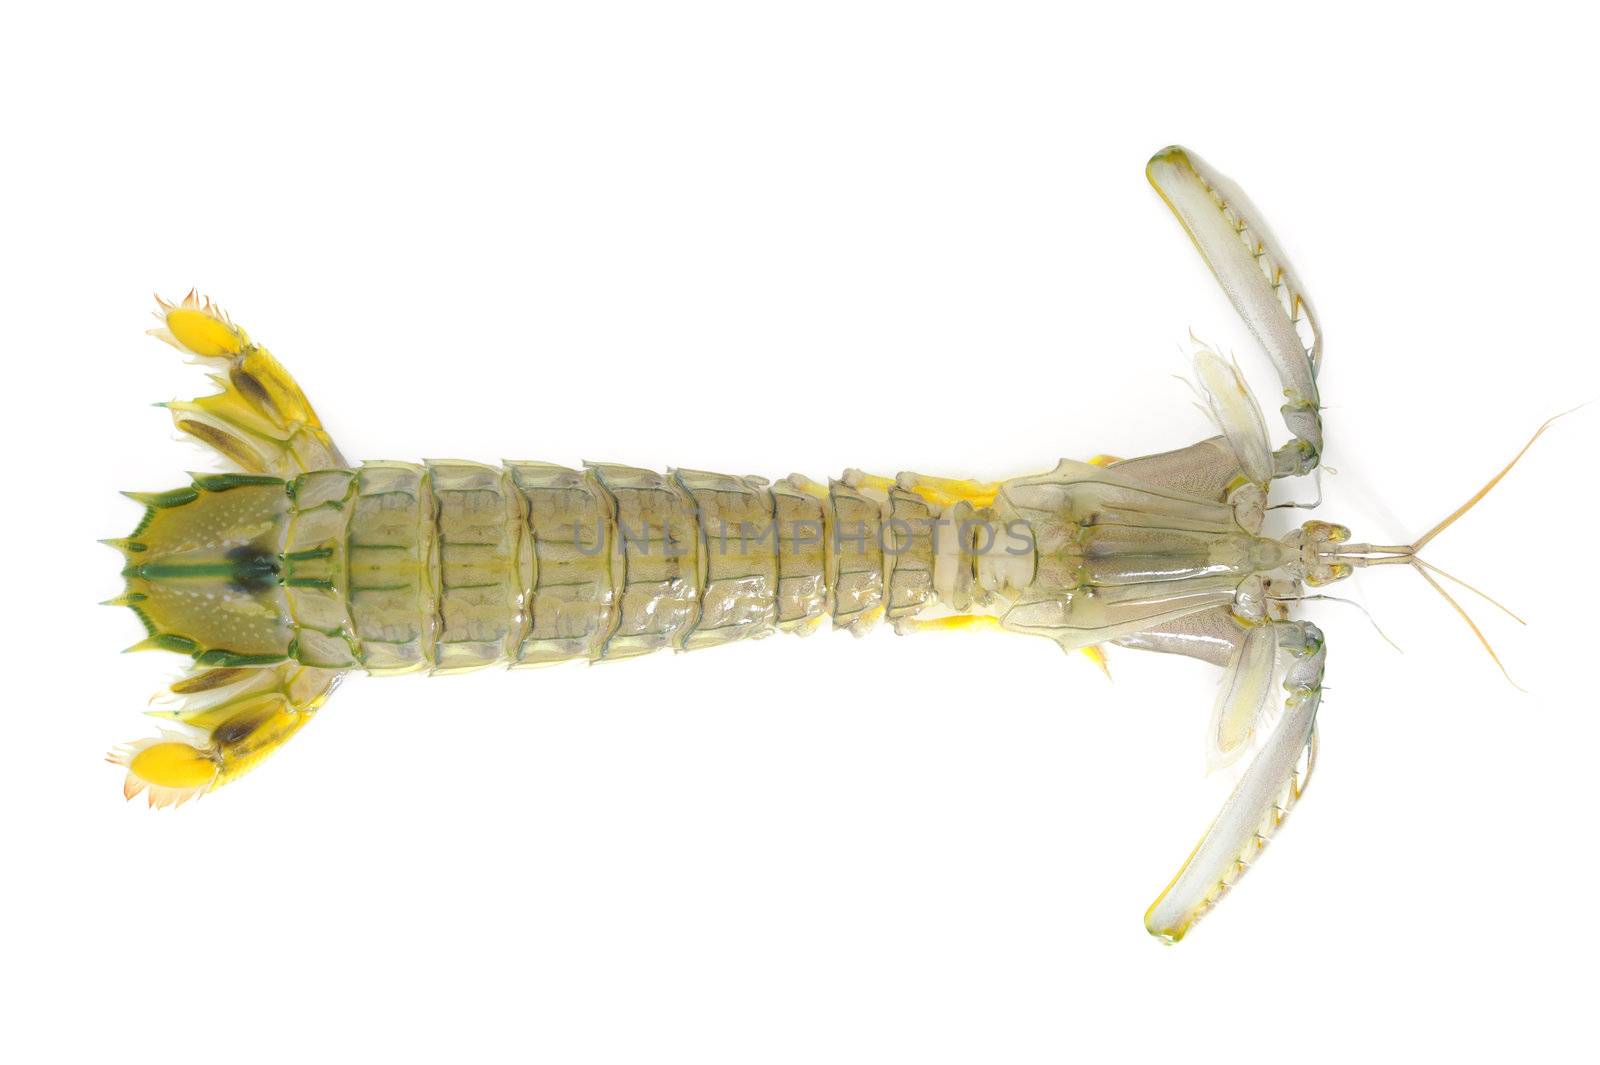 Mantis shrimp by antpkr